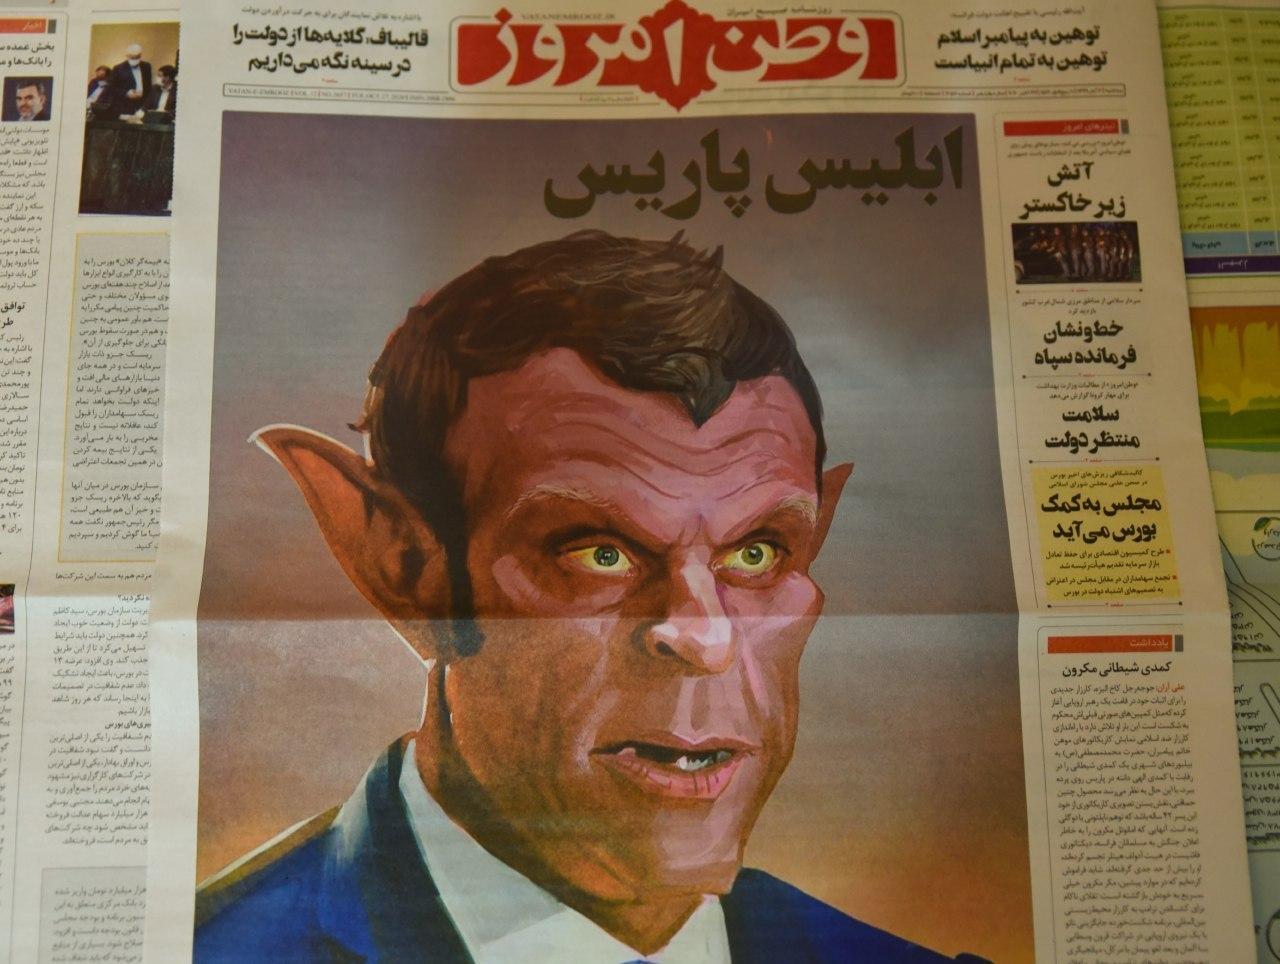   صحيفة إيرانية تنشر صورة ساخرة لـ ماكرون